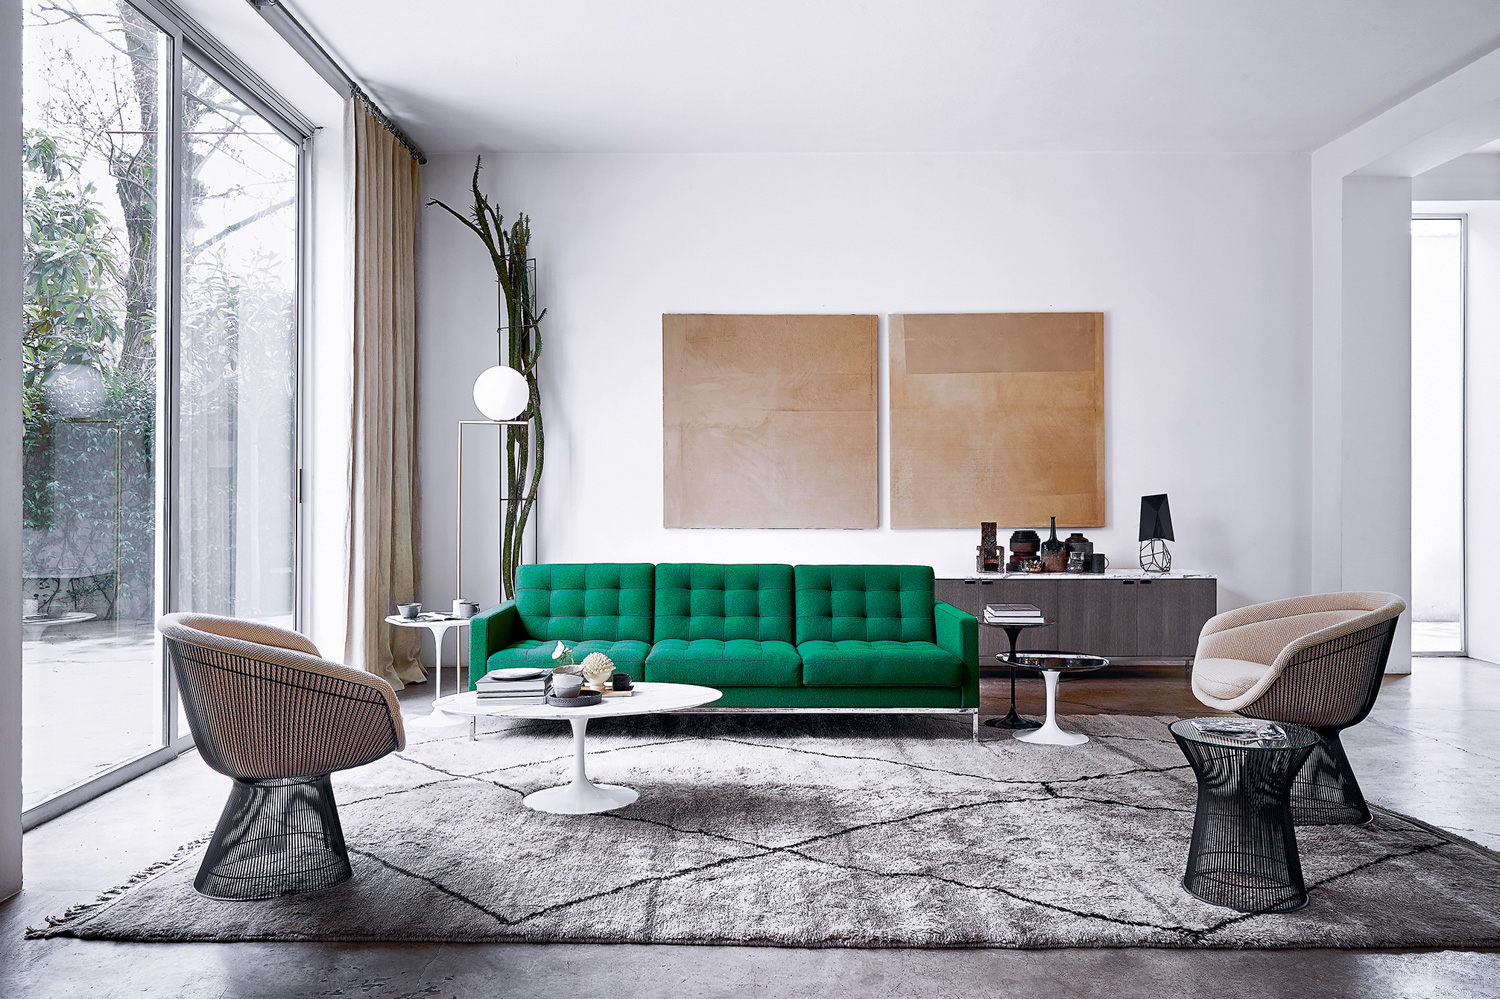 De Florence Knoll Sofa is een opvallende verschijning in je woonkamer. Vooral in een prachtige groene kleur geeft het je woonkamer nog meer levendigheid.